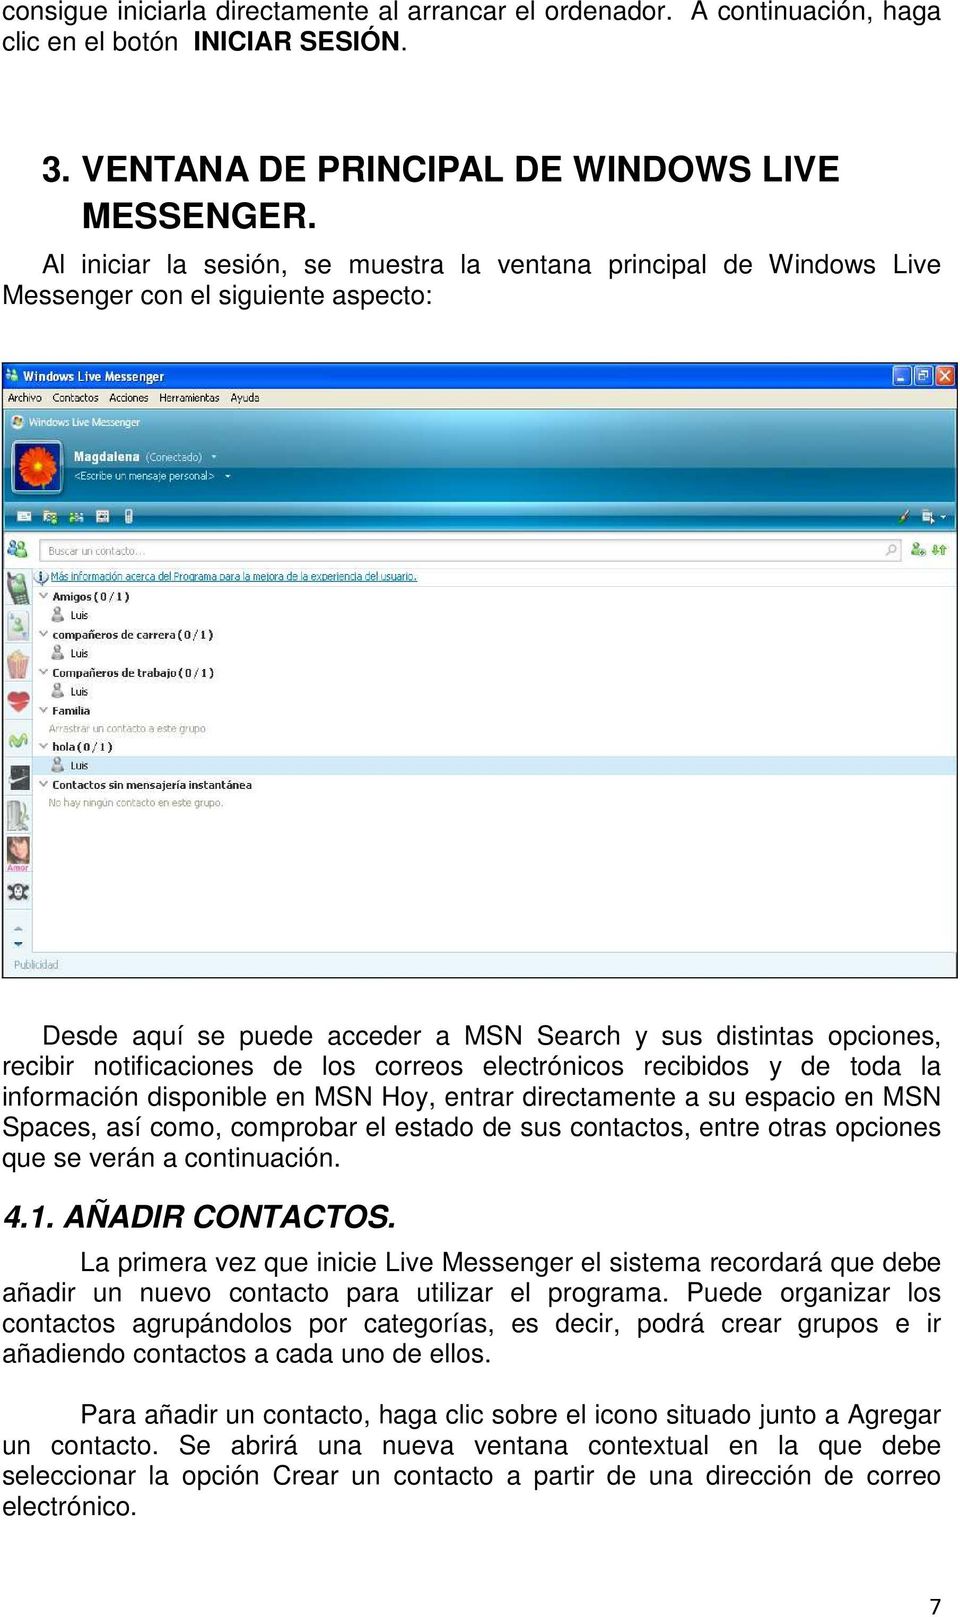 los correos electrónicos recibidos y de toda la información disponible en MSN Hoy, entrar directamente a su espacio en MSN Spaces, así como, comprobar el estado de sus contactos, entre otras opciones